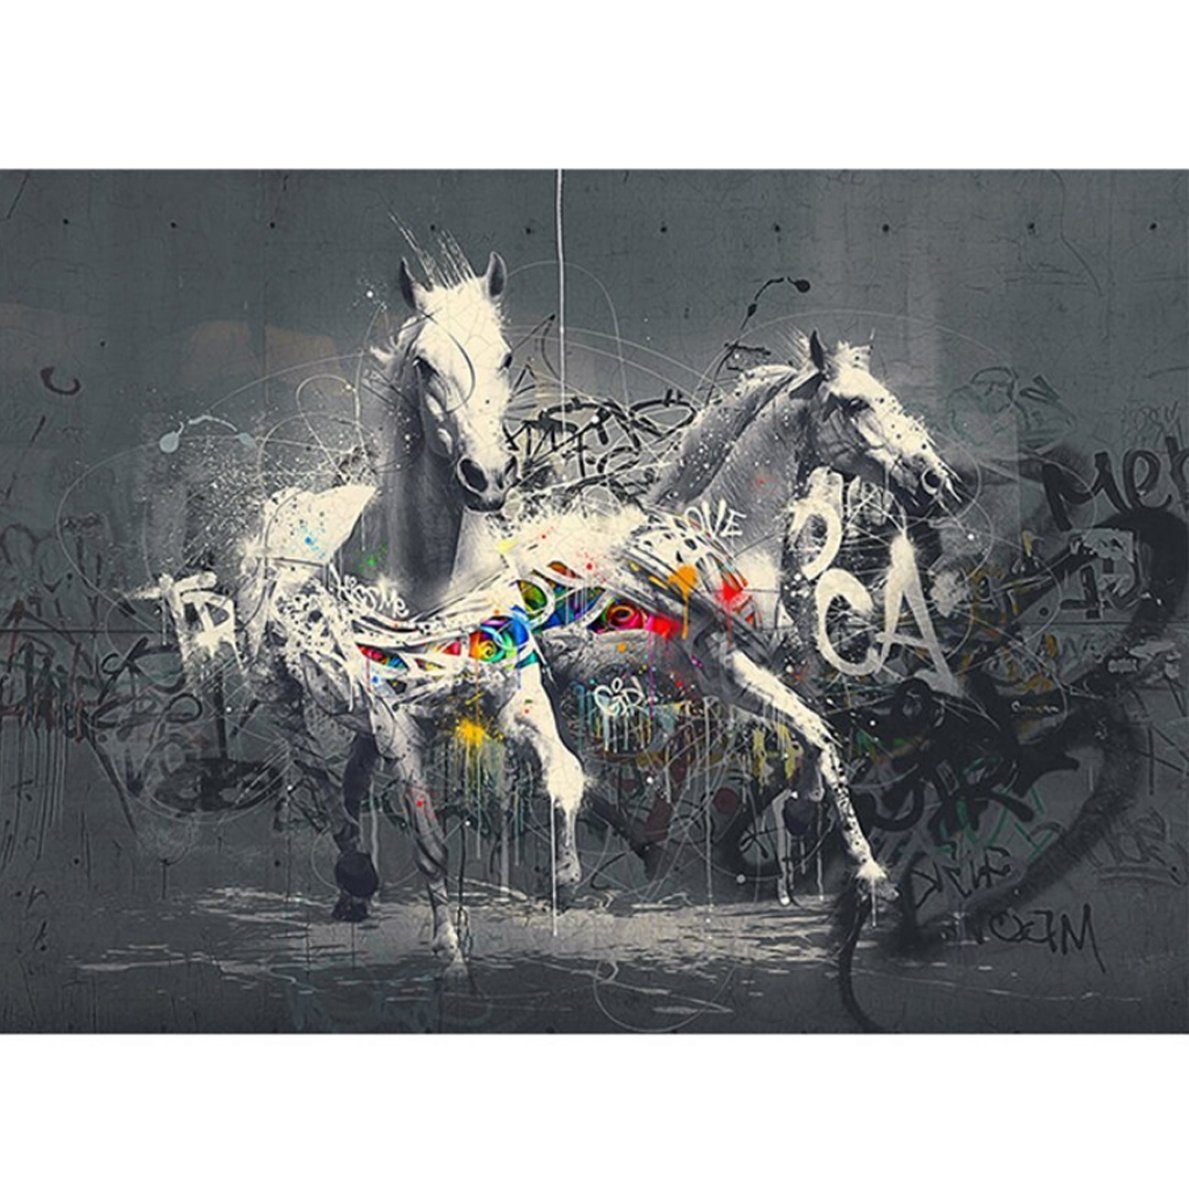 TPFLiving Kunstdruck (OHNE RAHMEN) Poster - Leinwand - Wandbild, Grafitti  Art - Weiße Pferde vor grauem Hintergrund (Verschiedene Größen), Farben:  Leinwand bunt - Größe: 20x30cm